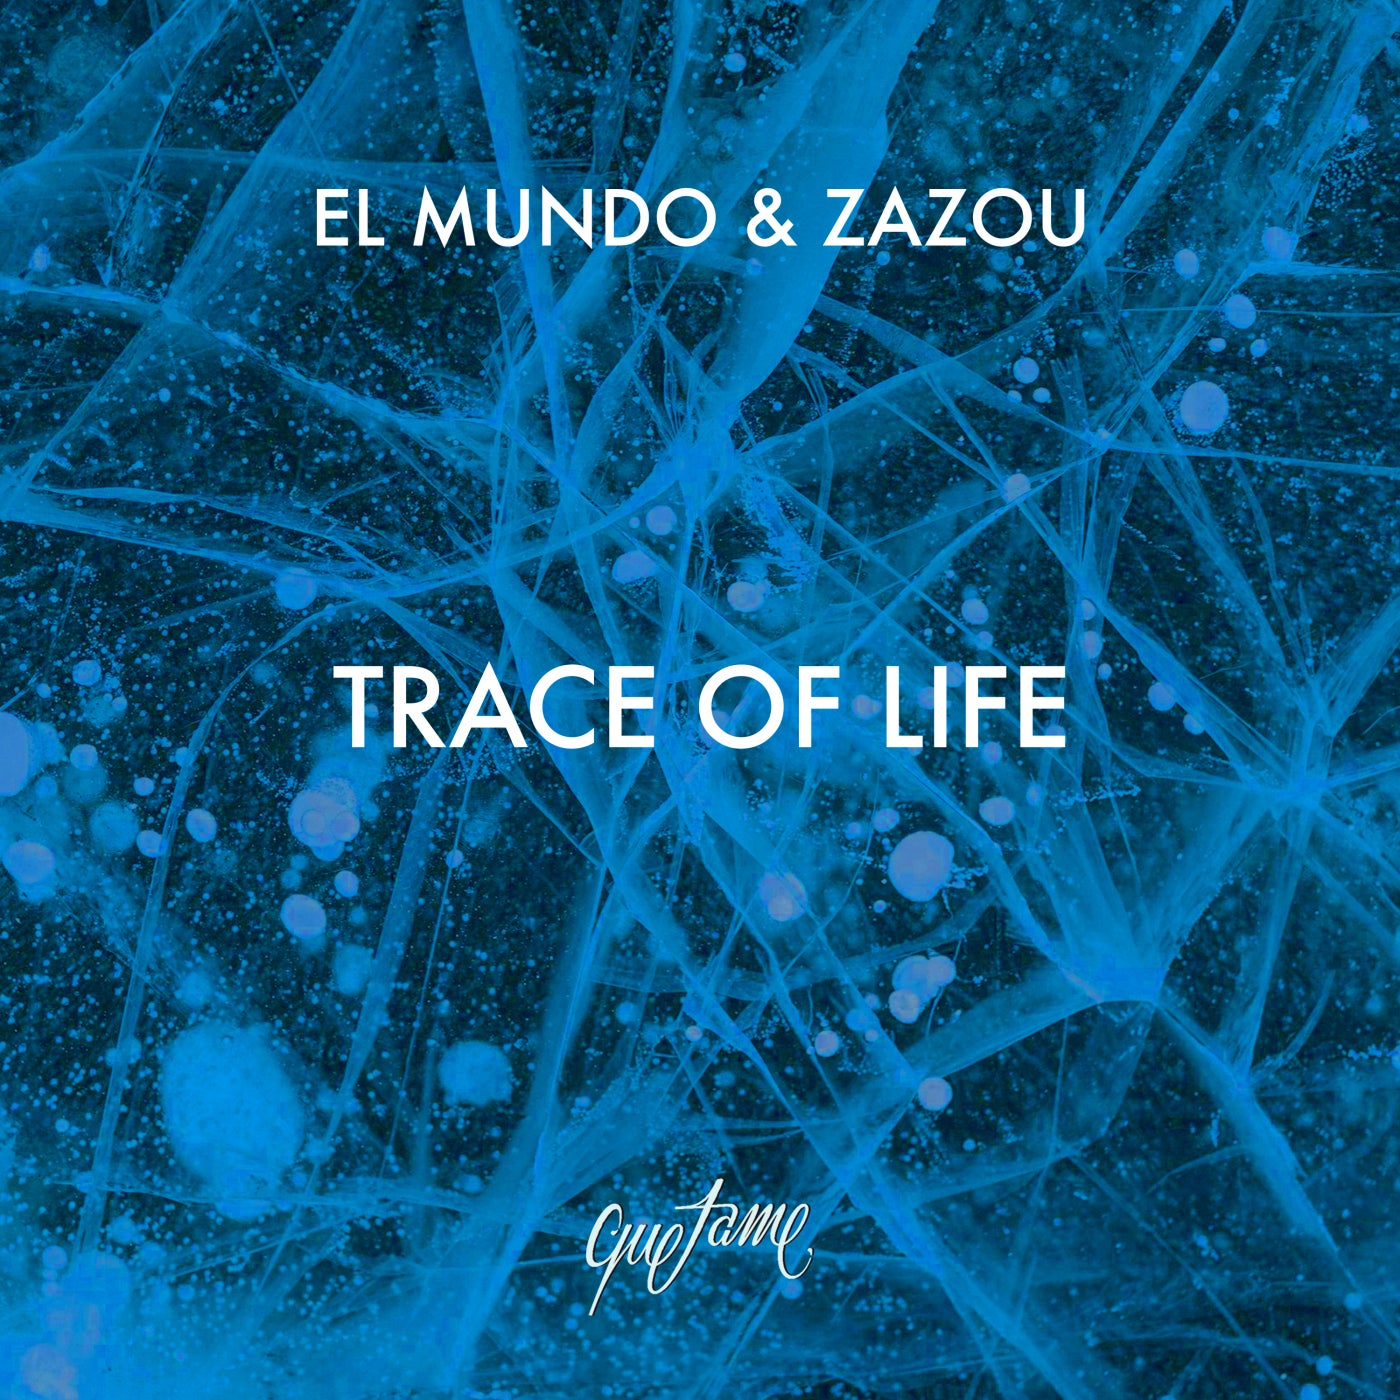 image cover: El Mundo, Zazou - Trace of Life on Quetame